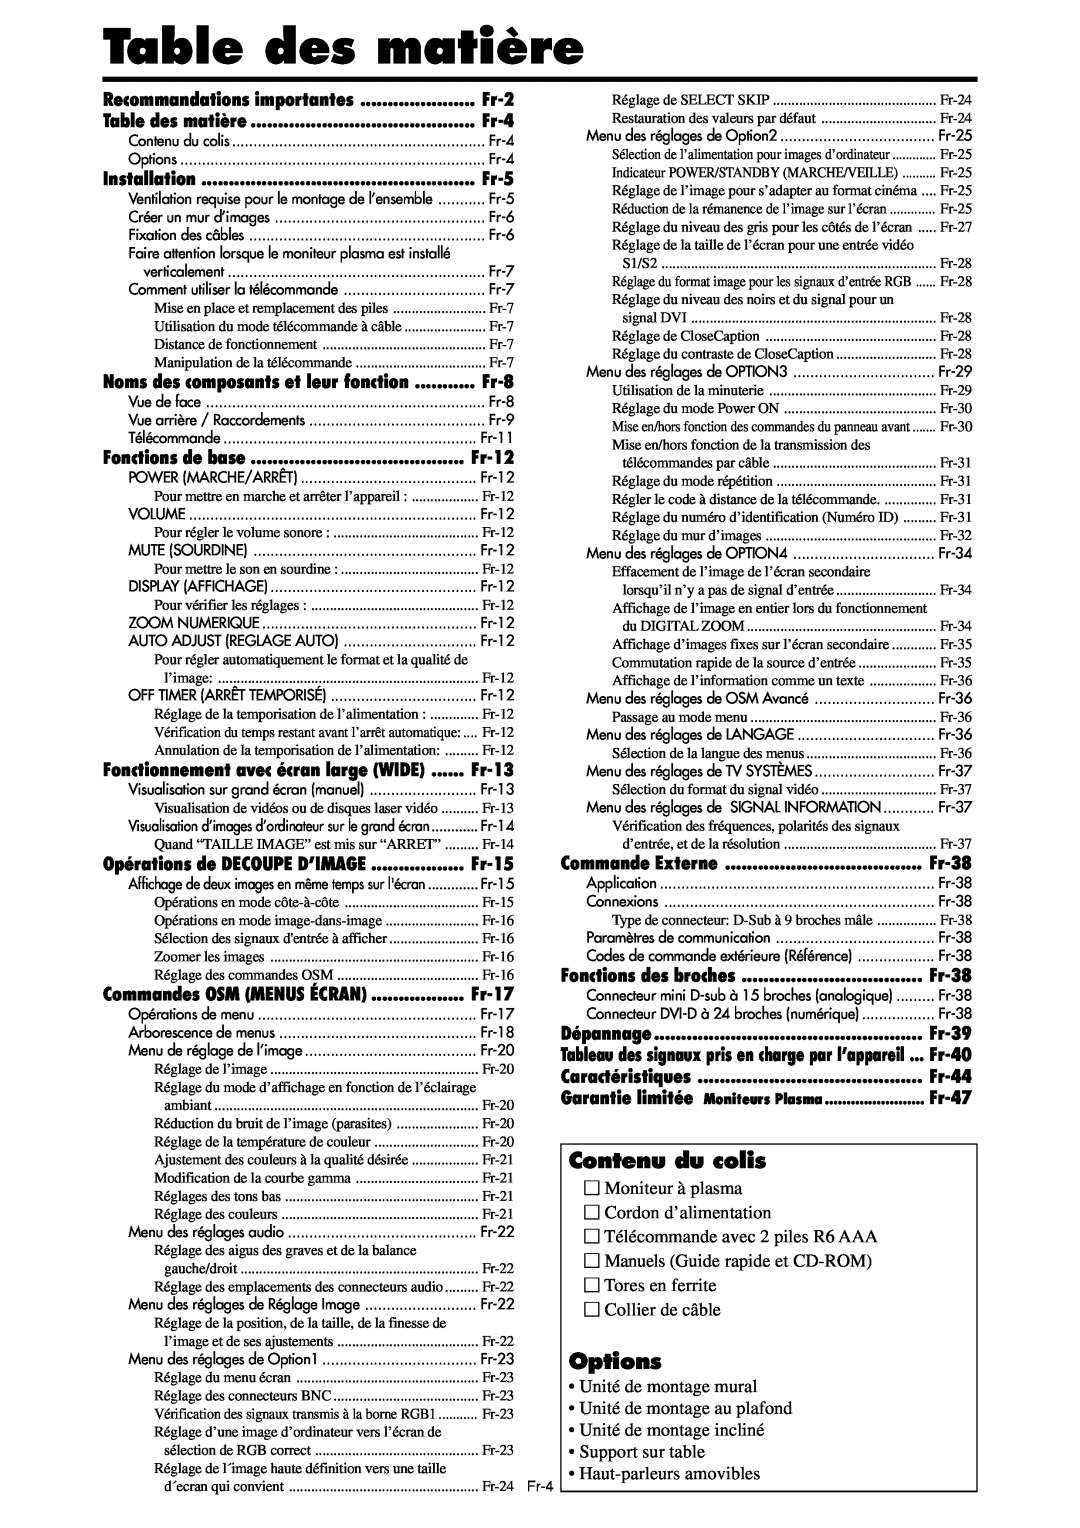 NEC PX-42XM4A Table des matière, Contenu du colis, Options, Fr-2, Fr-4, Fr-5, Fr-8, Fr-12, Fr-13, Fr-15, Fr-17, Fr-38 